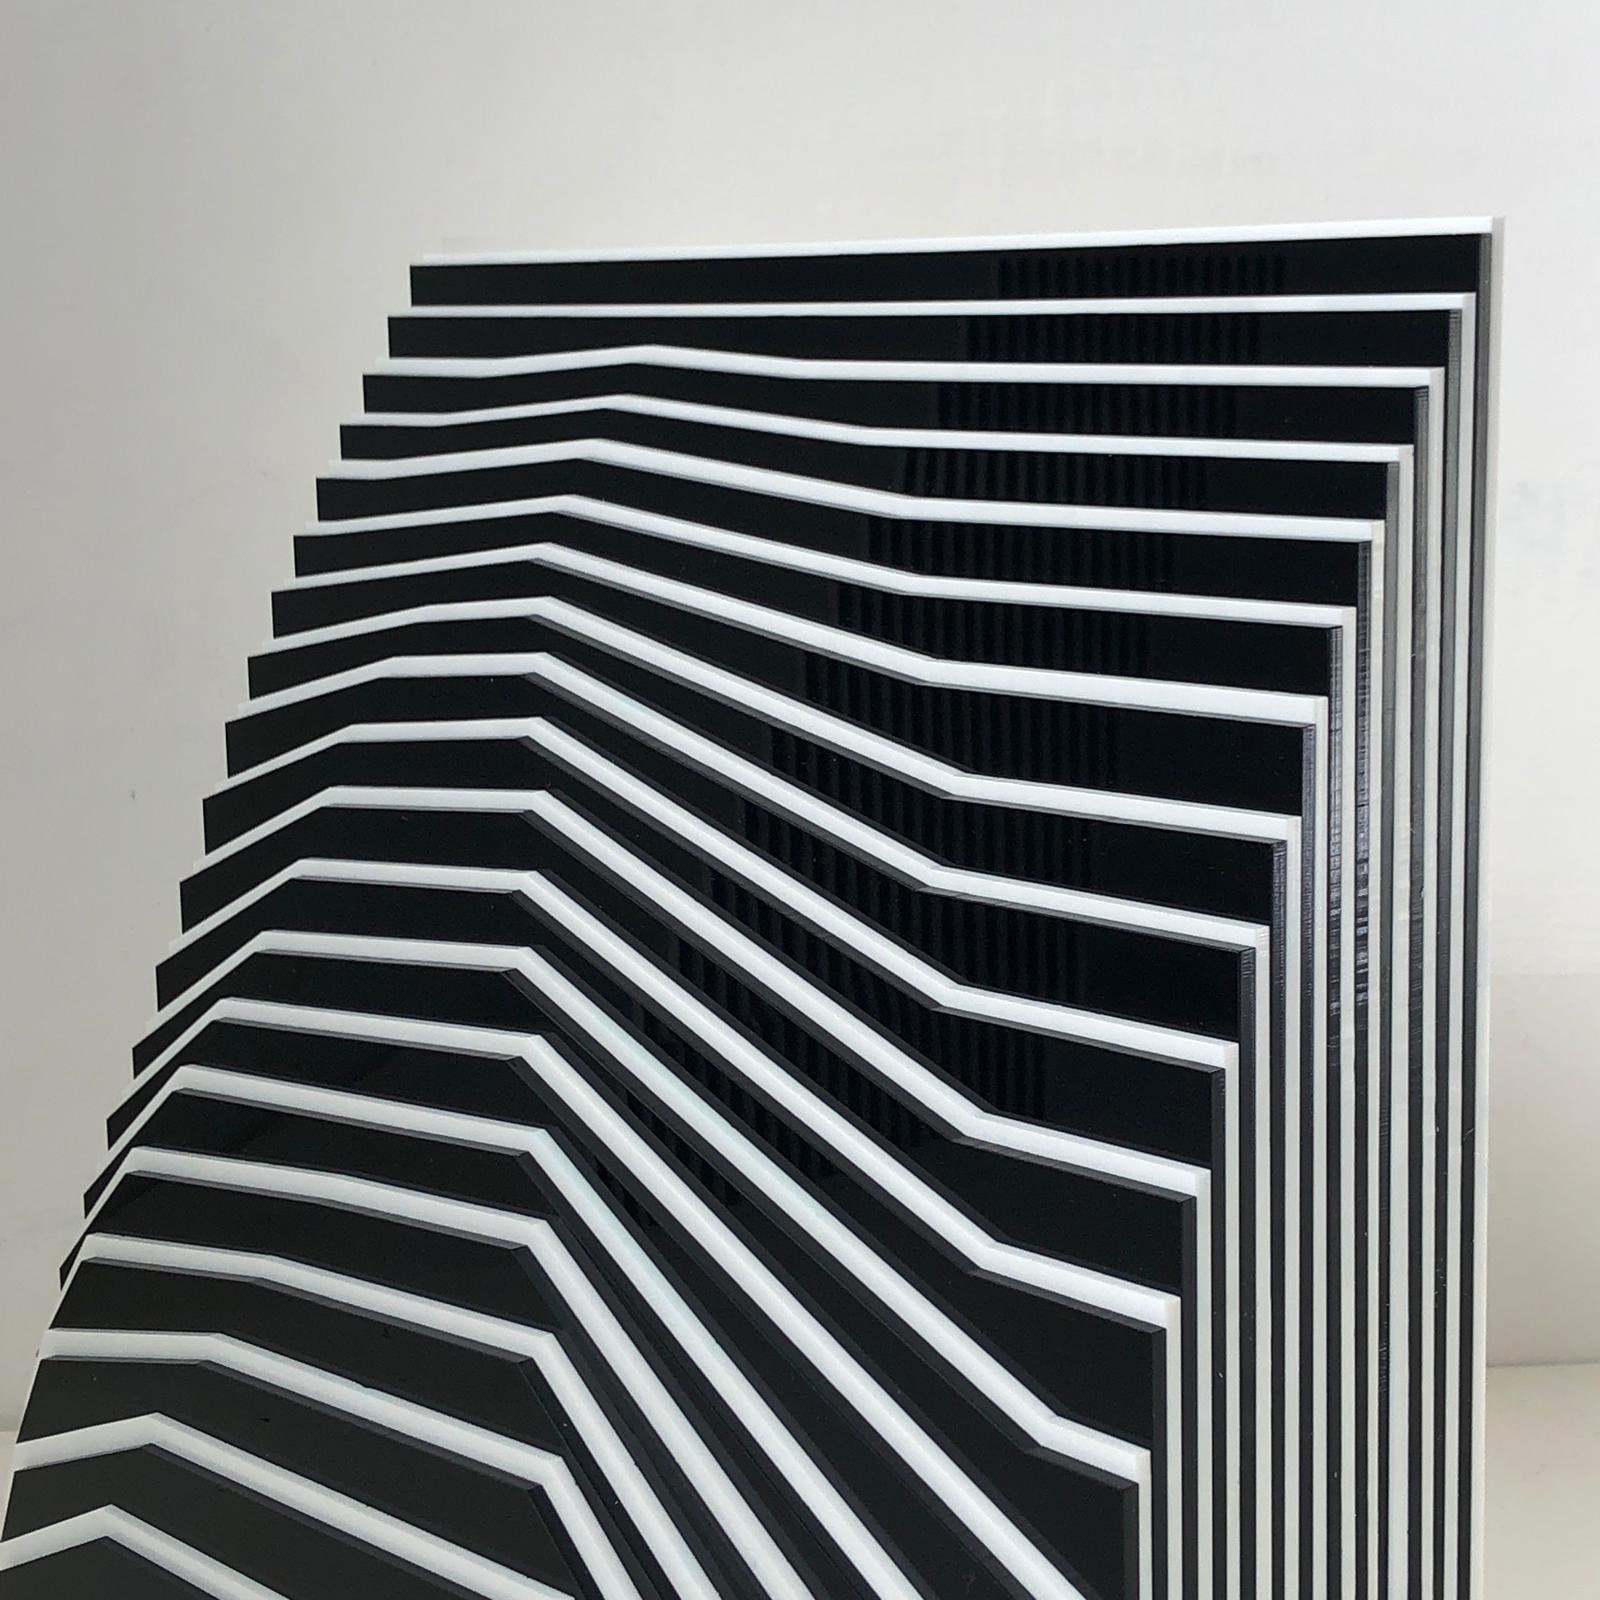 Optical Art Sculpture Gio Schiano Sculpture moderne fatto a mano  Géométrique Minimalisme Constructivisme Art concret bianco e nero -   France